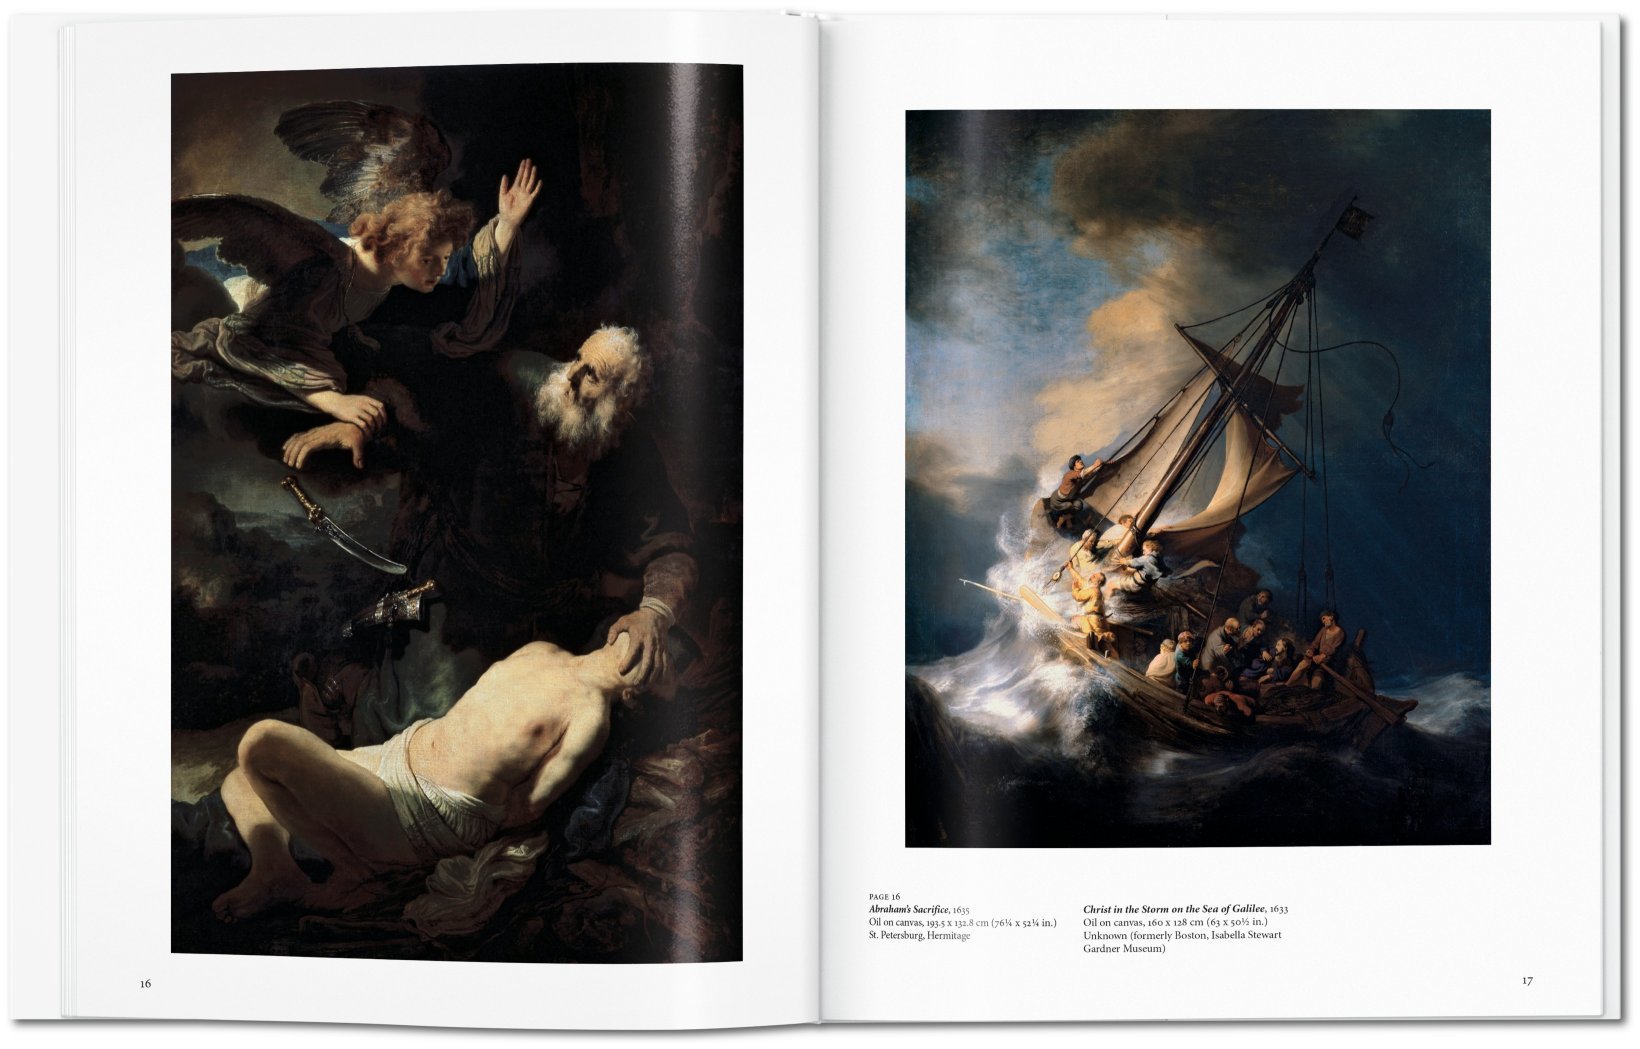 Kunstbücher, Rembrandt, Foto: ©Taschen Verlag